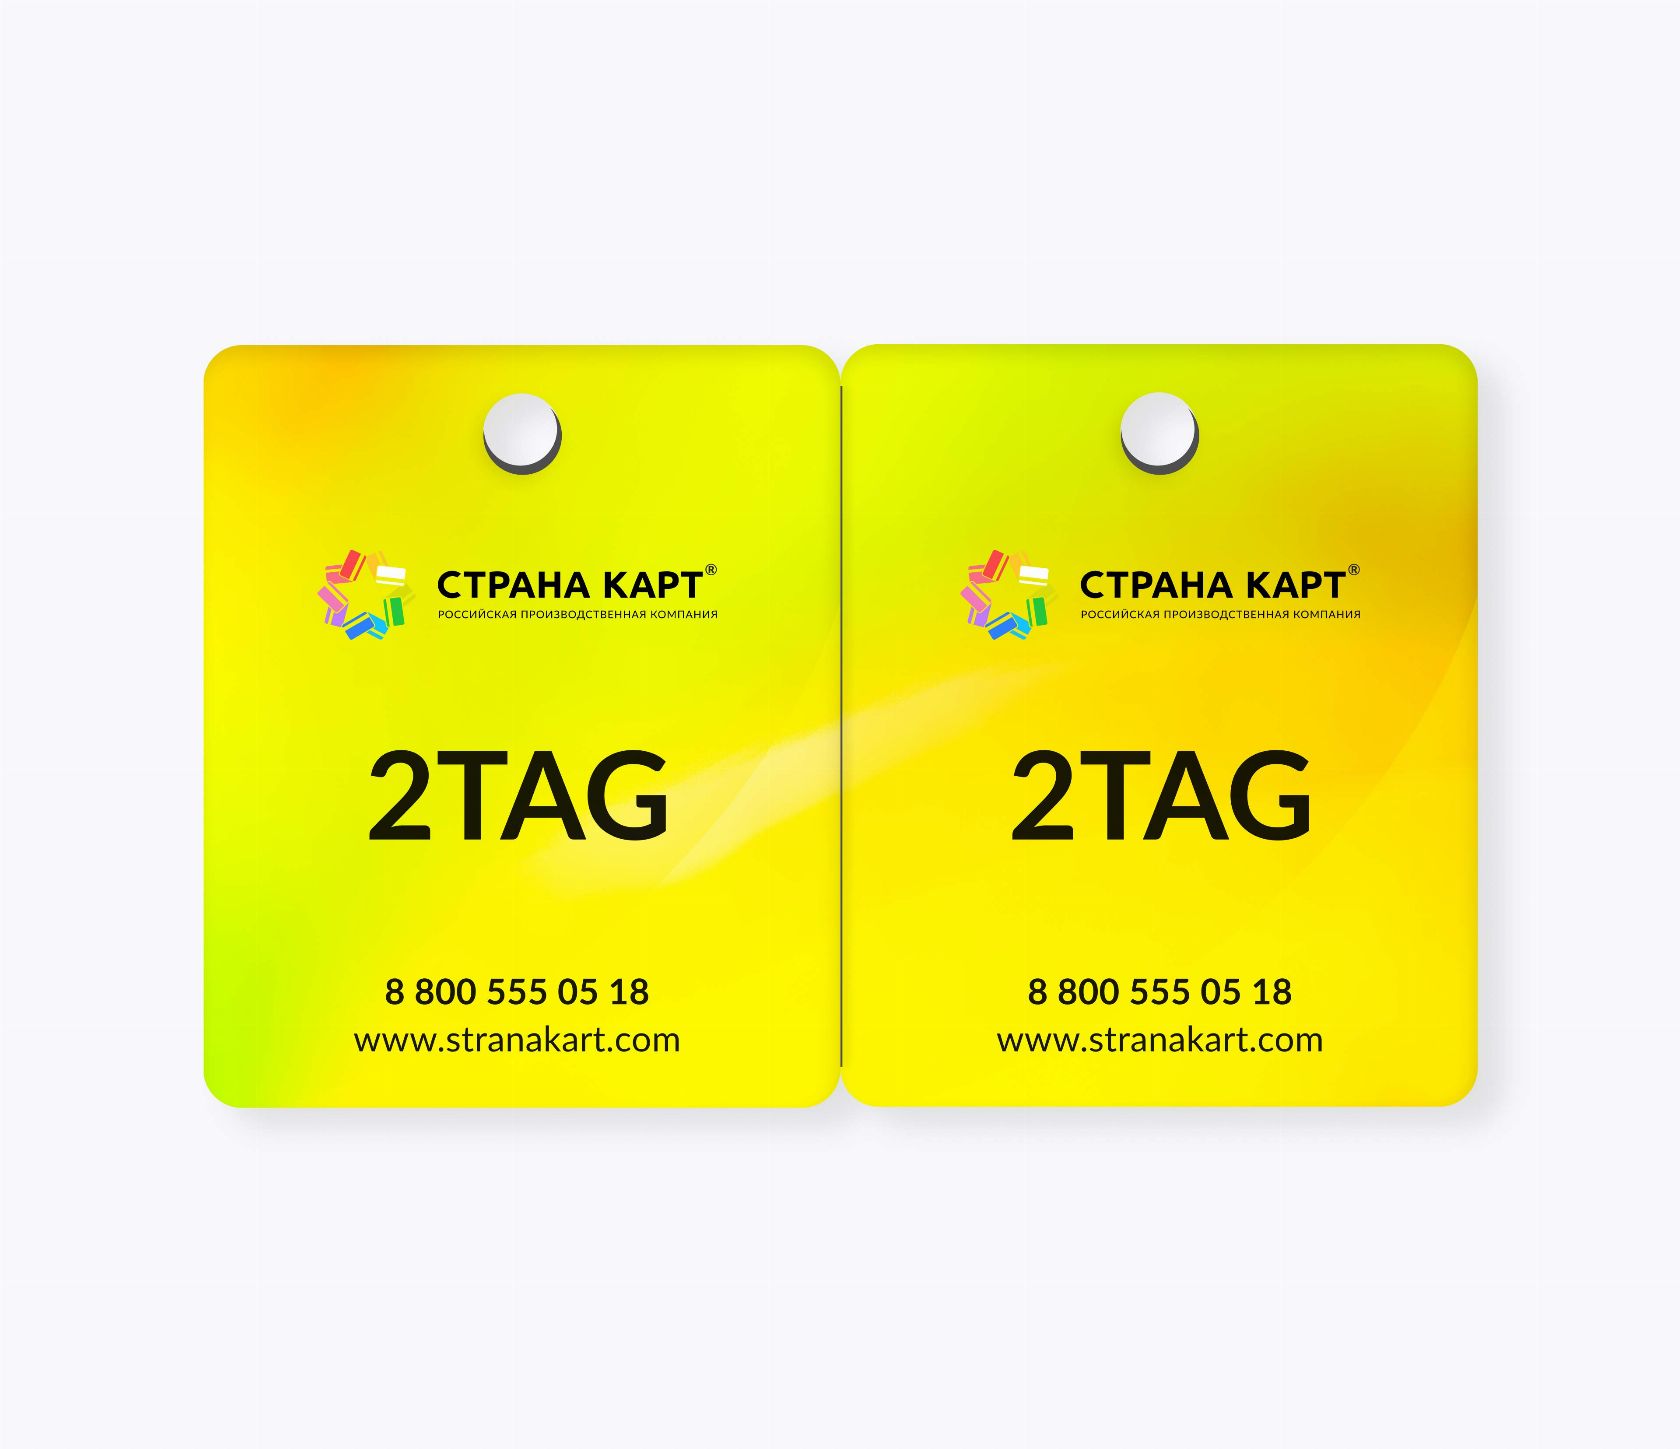 Пластиковые карты 2-TAG Пластиковые карты 2-TAG